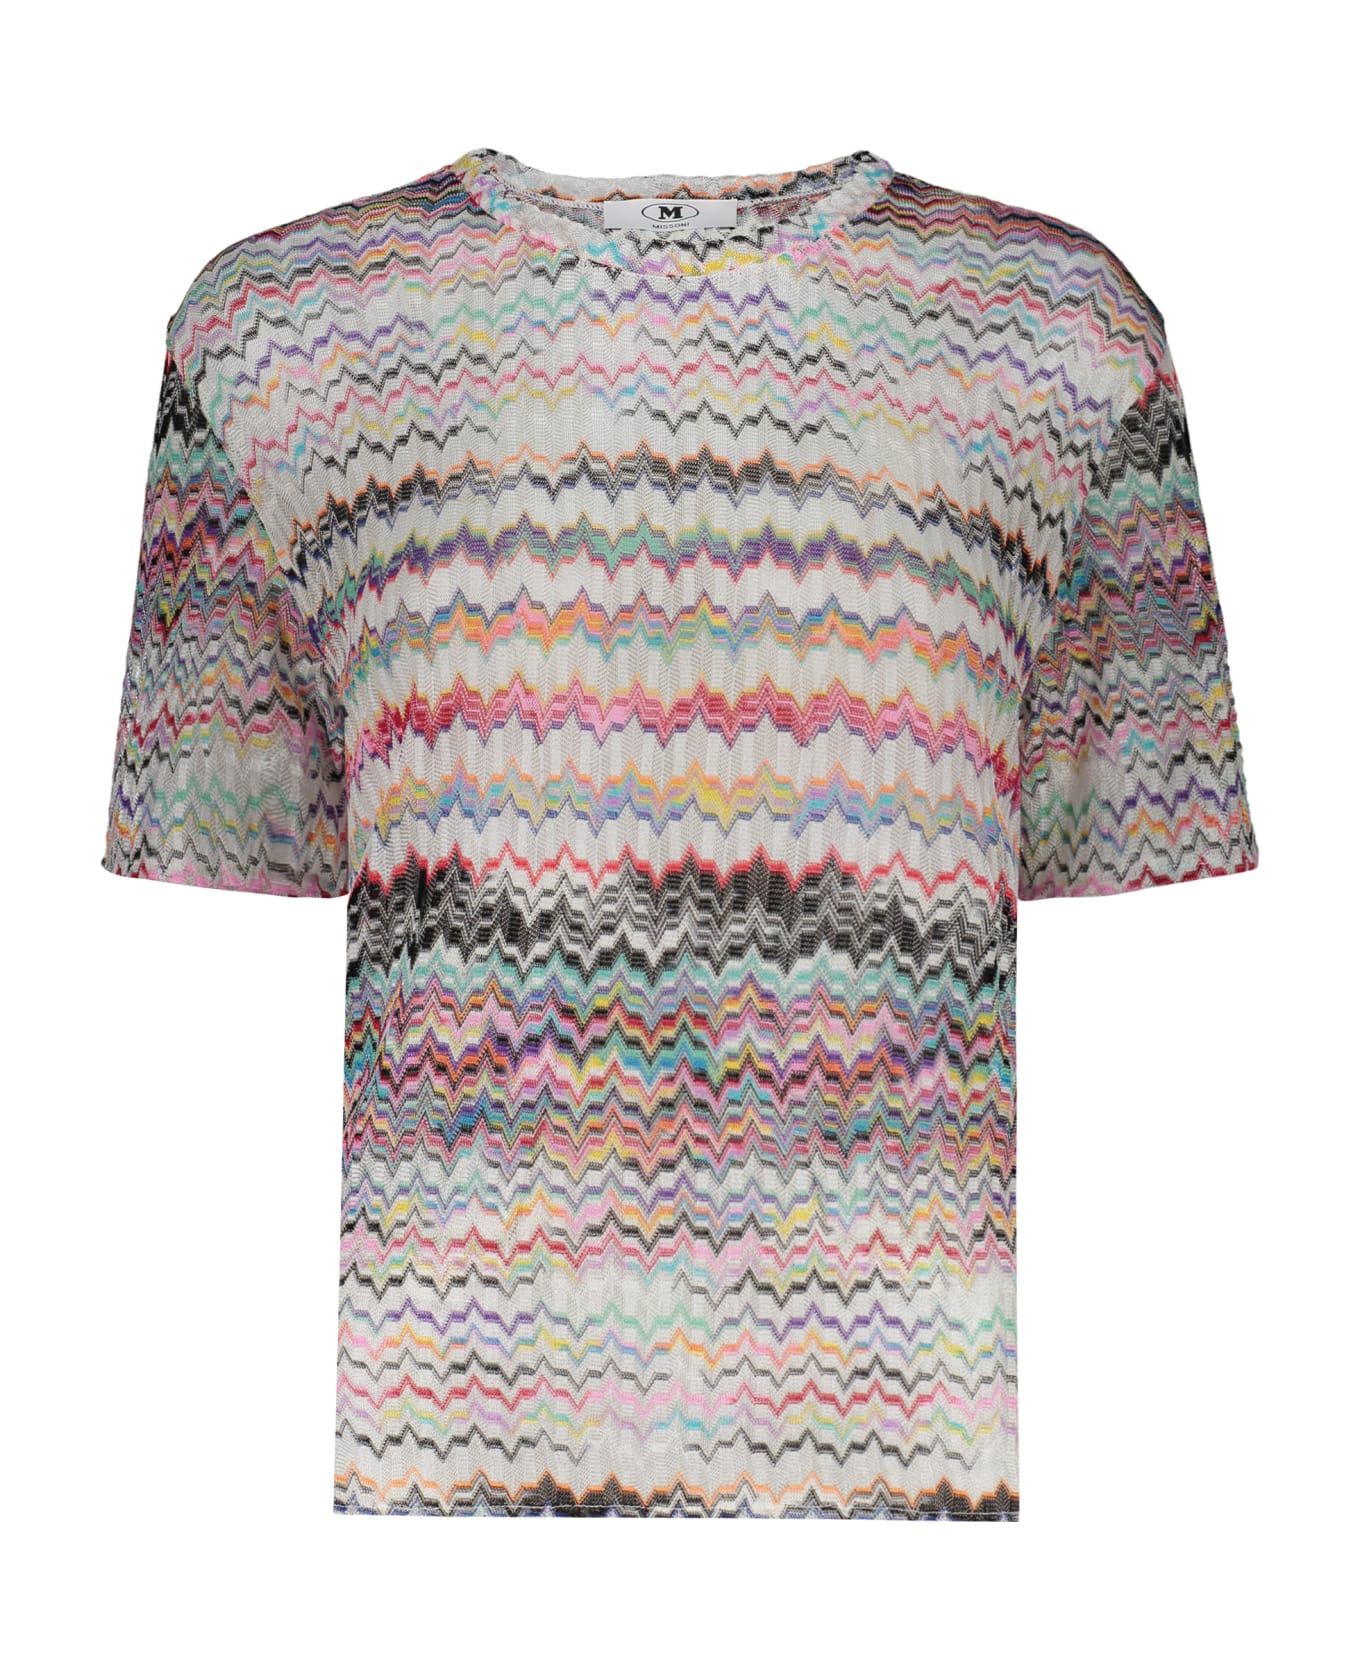 M Missoni Viscose Top - Multicolor Tシャツ